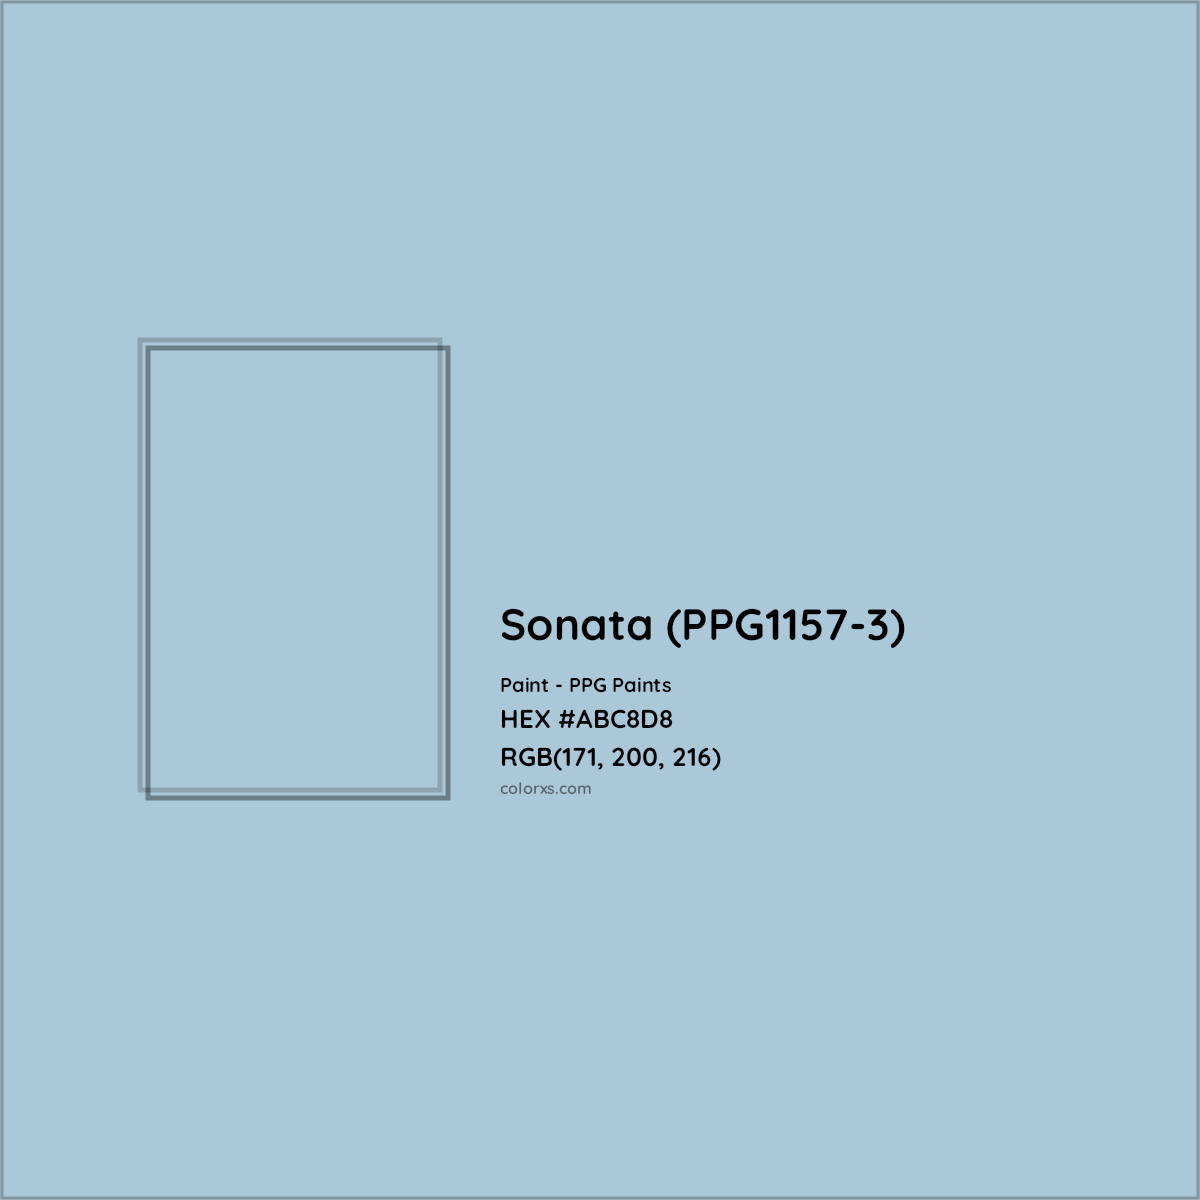 HEX #ABC8D8 Sonata (PPG1157-3) Paint PPG Paints - Color Code